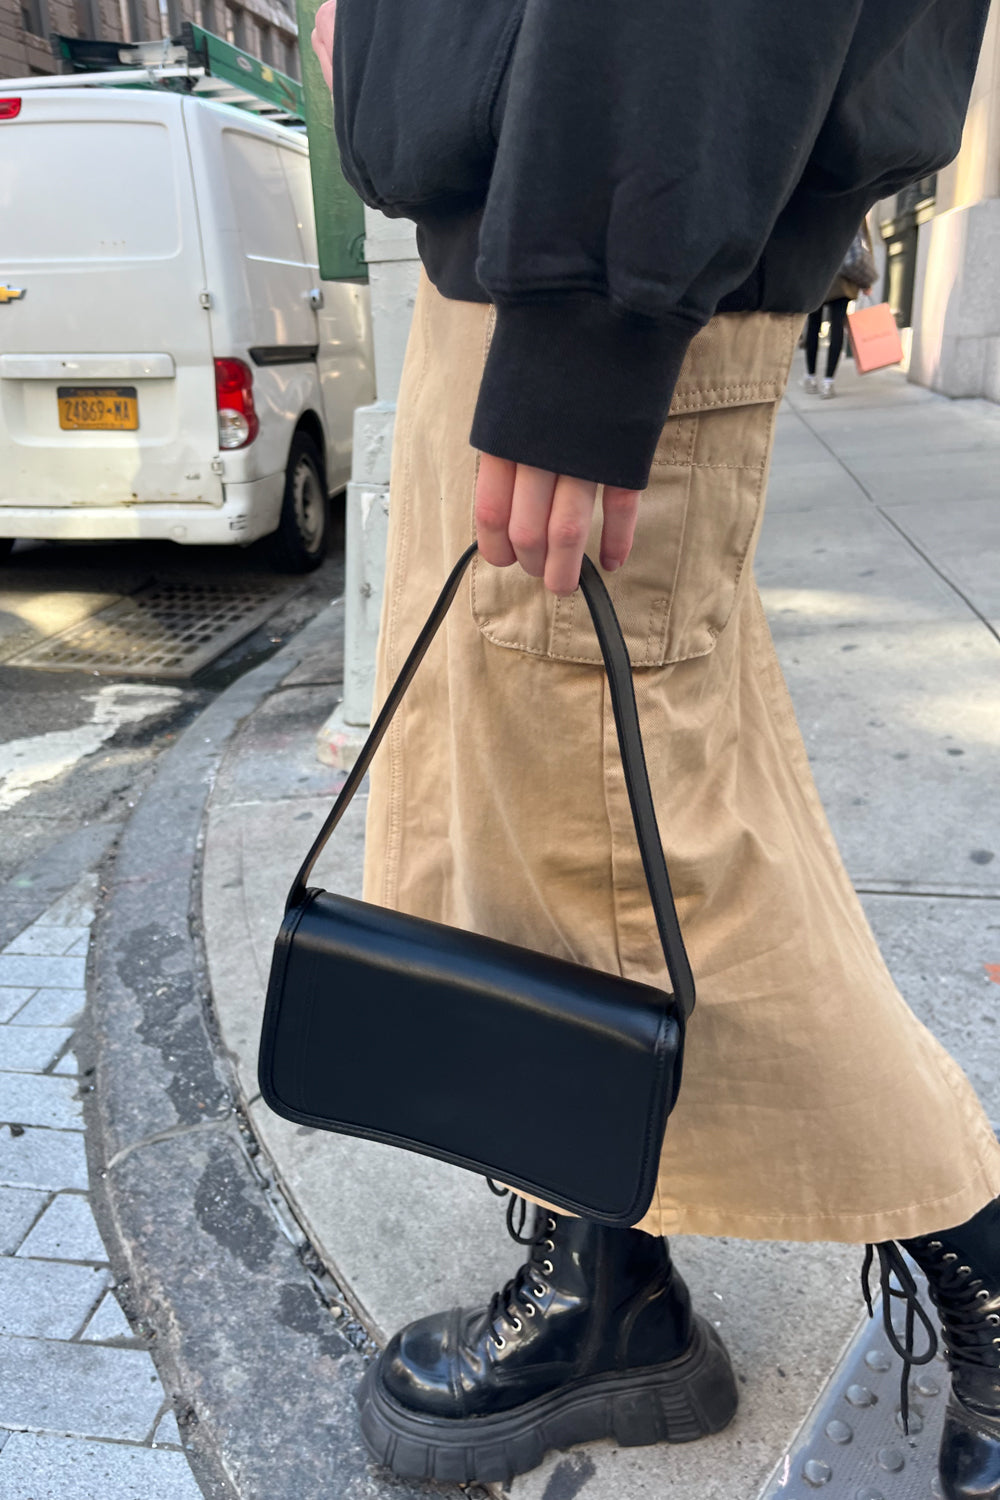 Black Leather Shoulder Bag